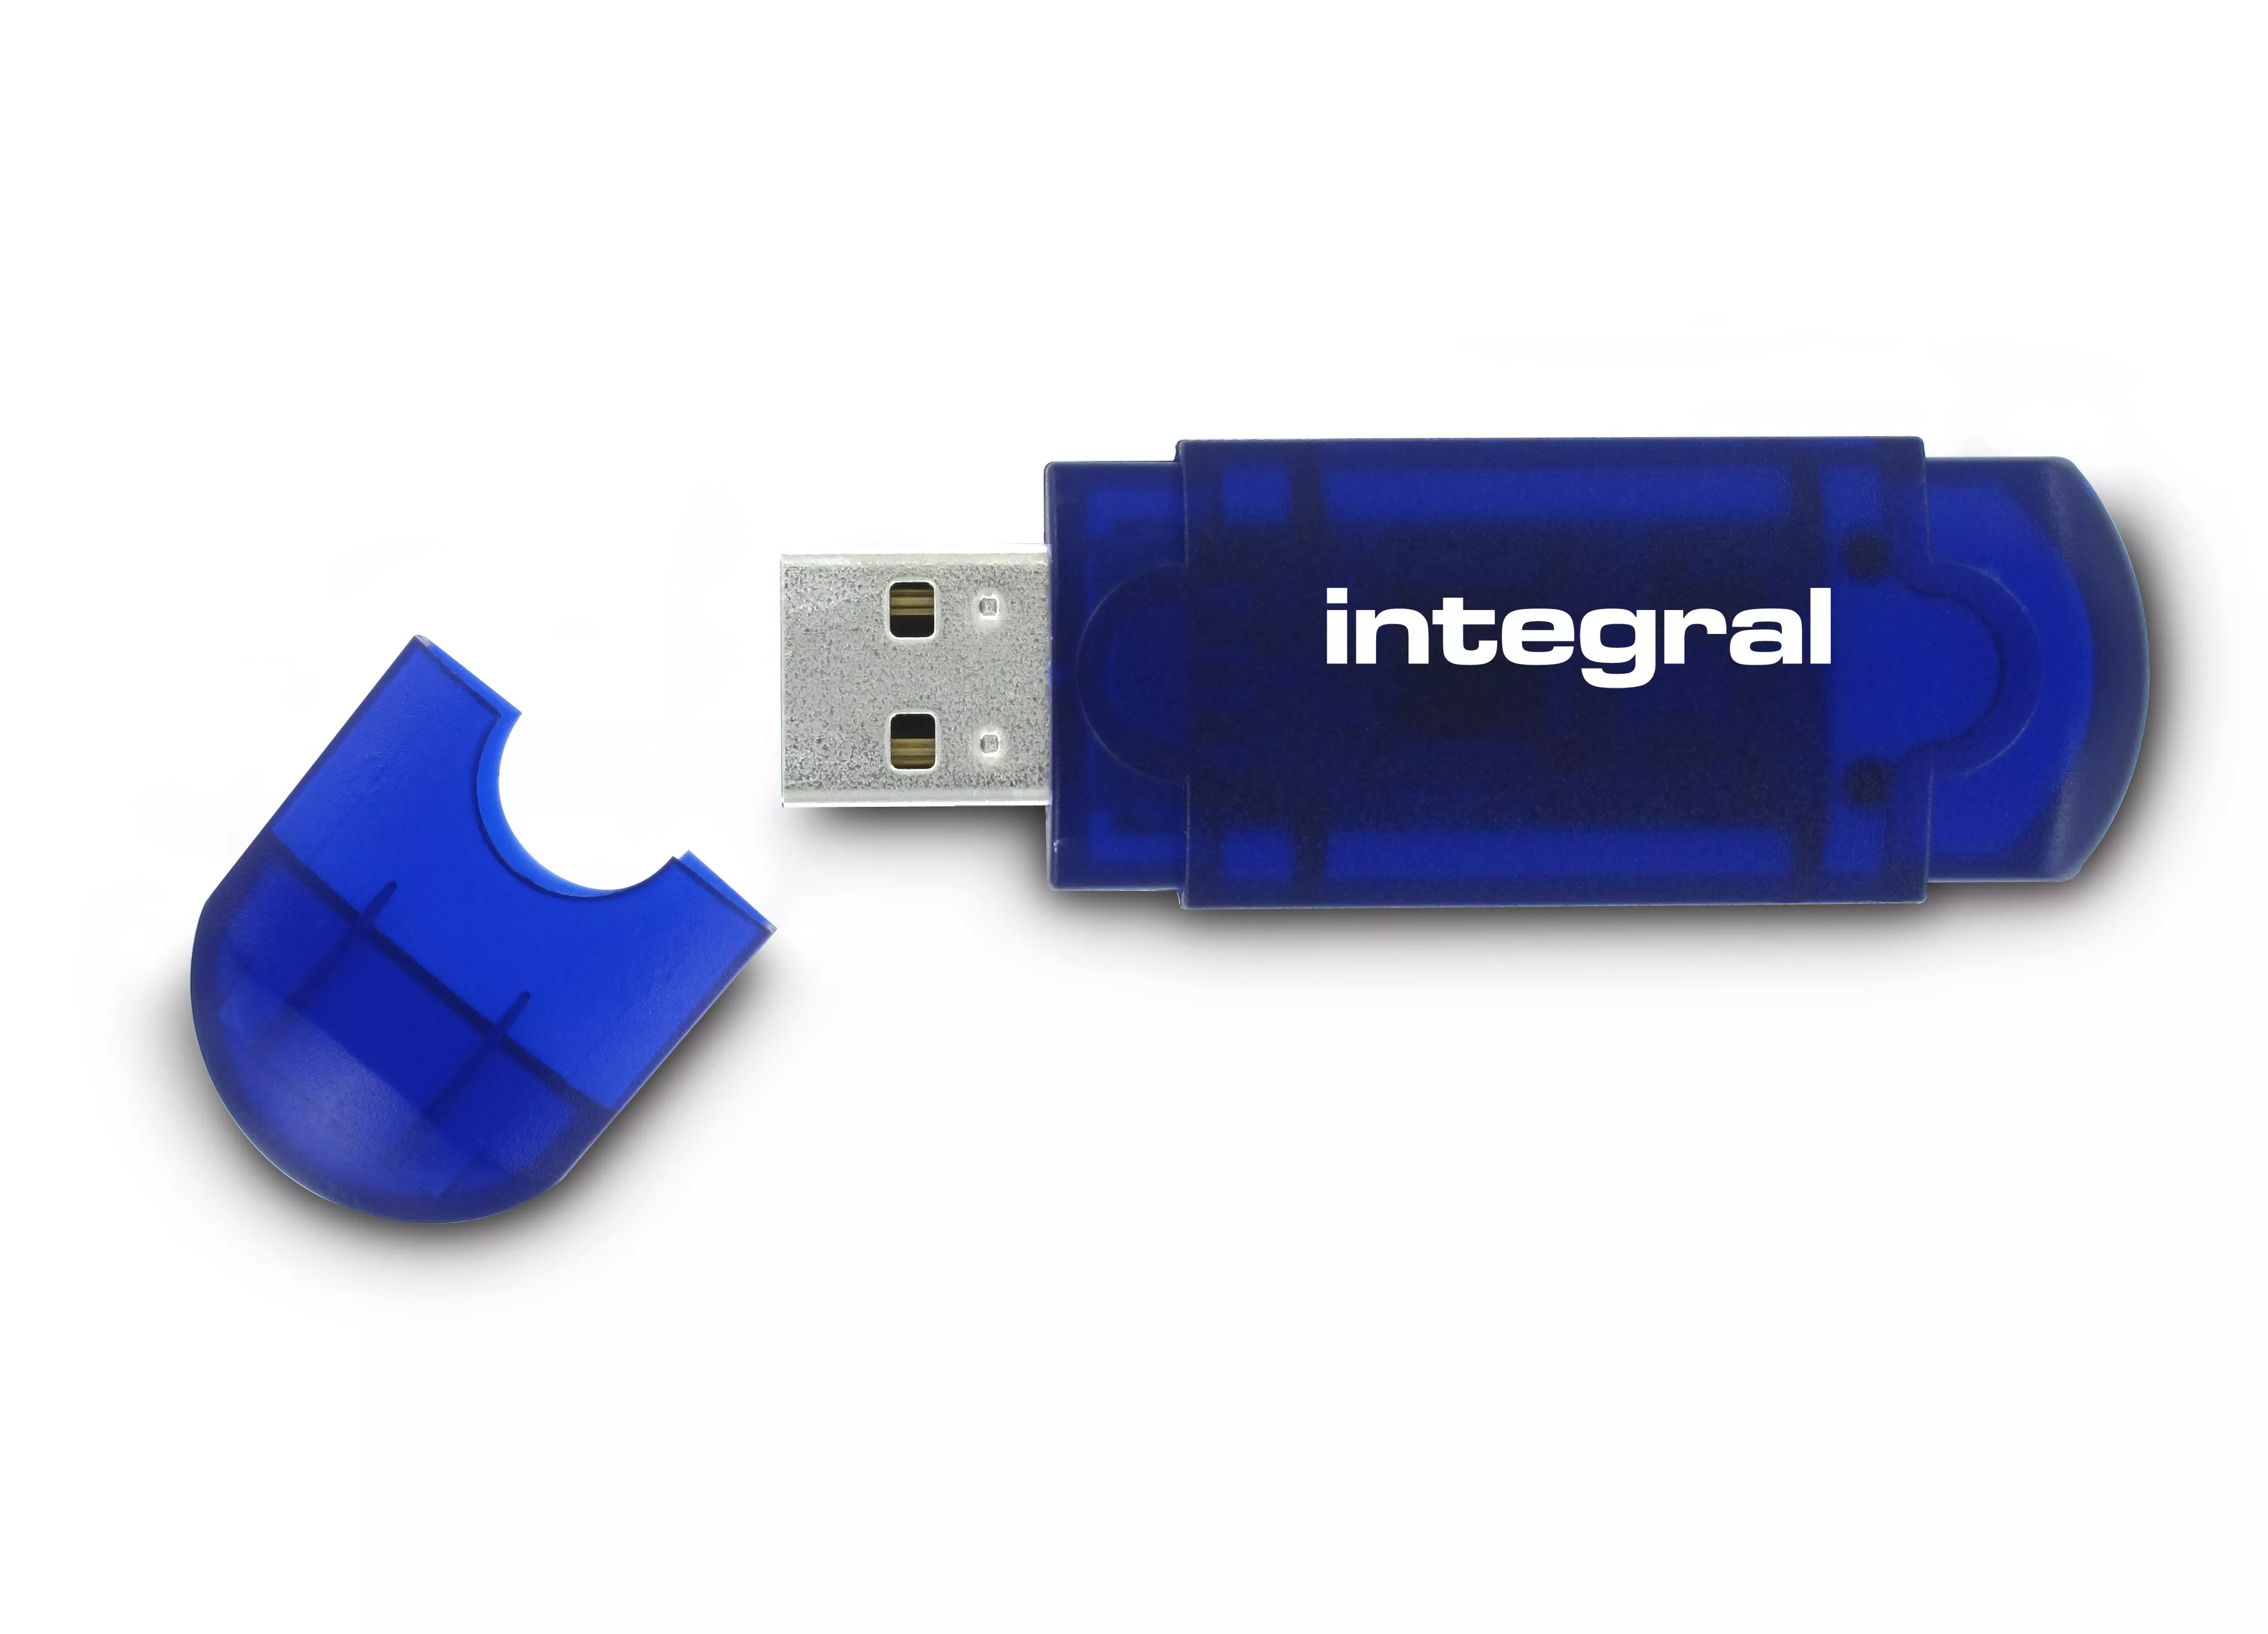 Vente Adaptateur stockage Integral 64GB USB2.0 DRIVE EVO BLUE INTEGRAL sur hello RSE